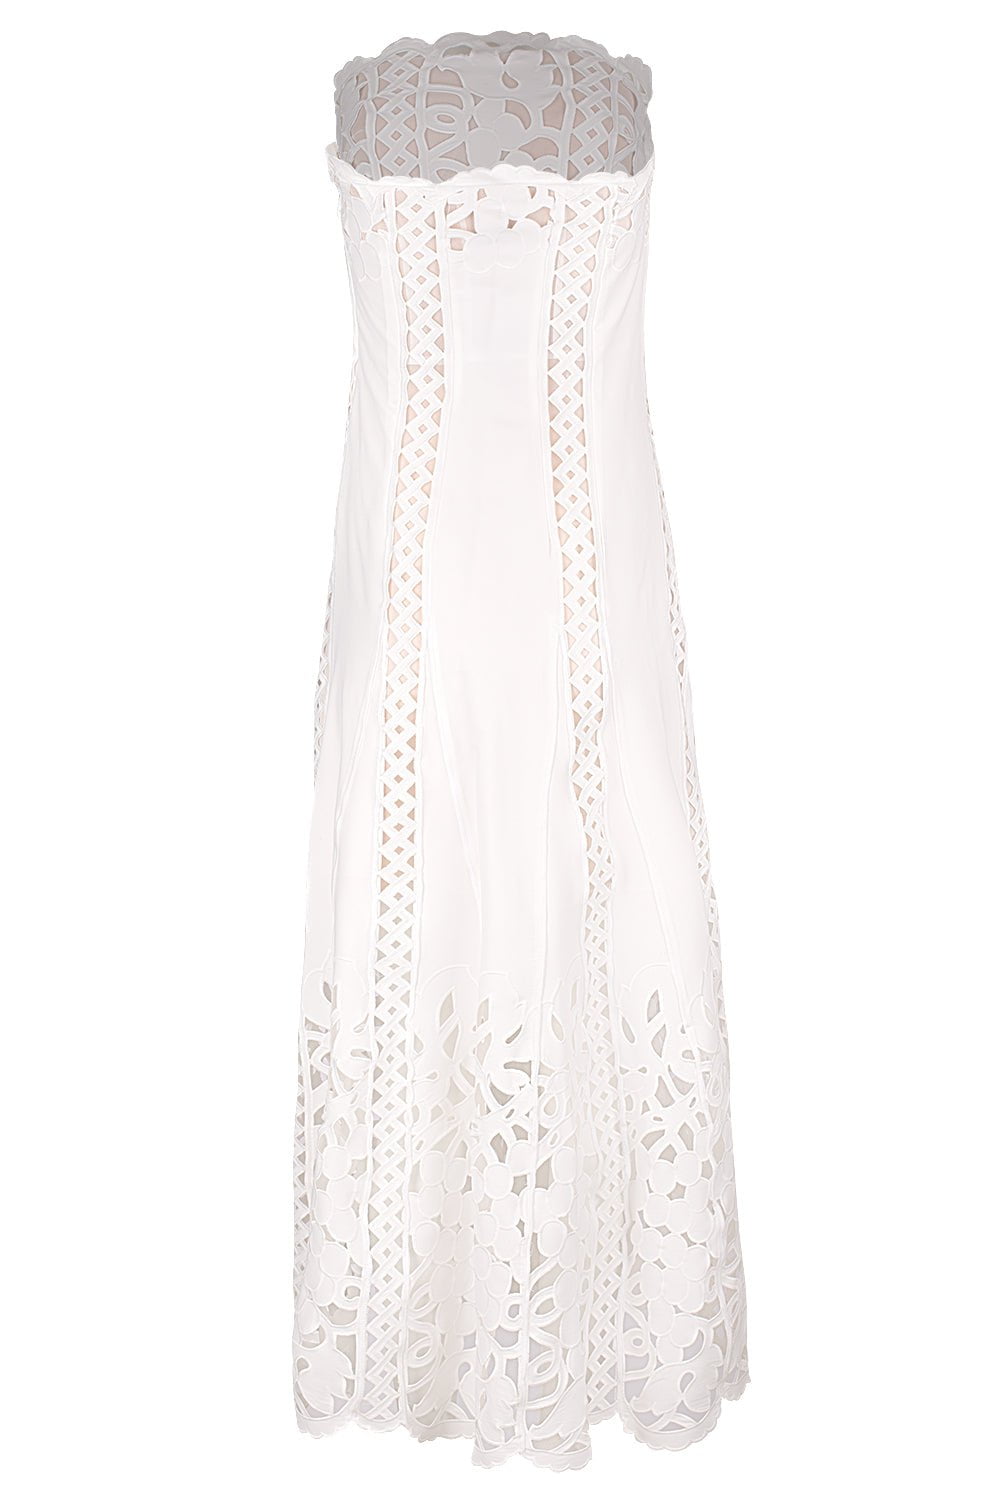 OSCAR DE LA RENTA-Strapless Floral A Line Dress-WHITE